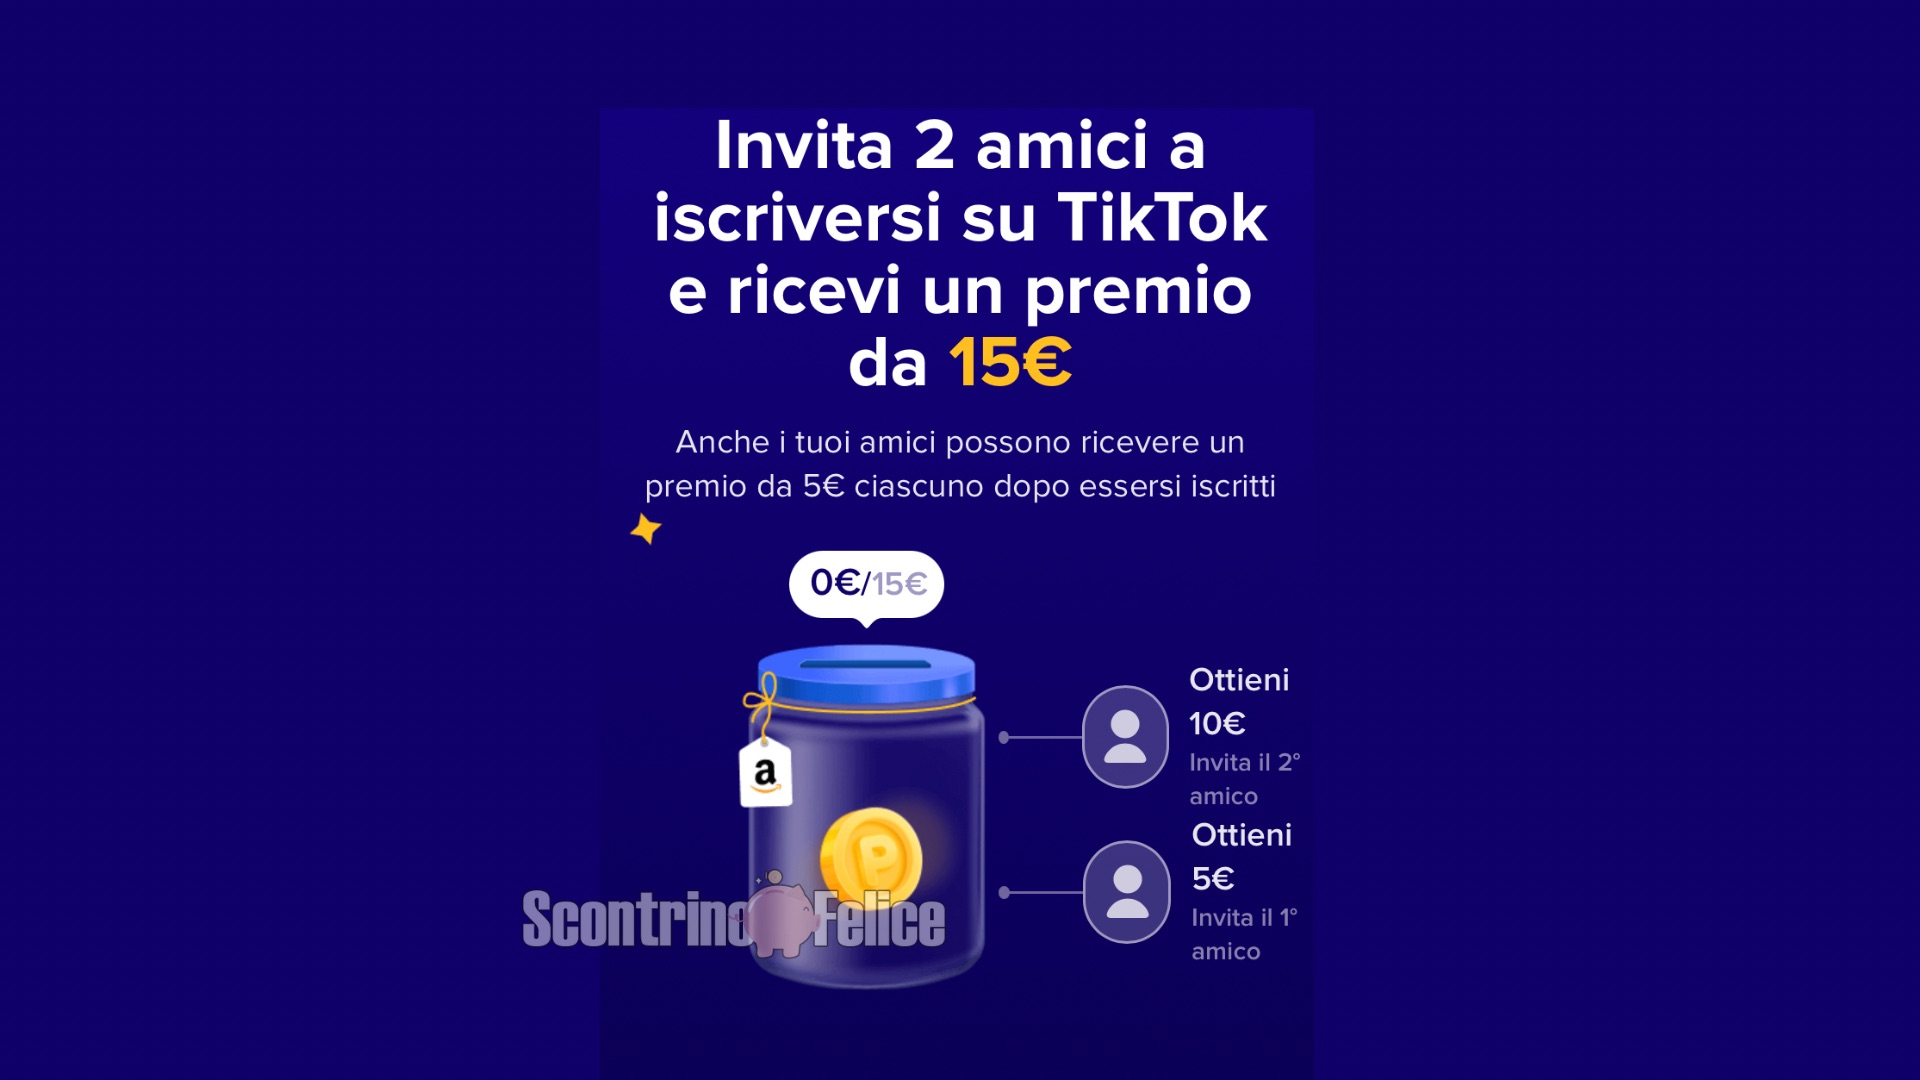 Tik Tok: invita 2 amici e guadagna 15 euro Amazon! 2